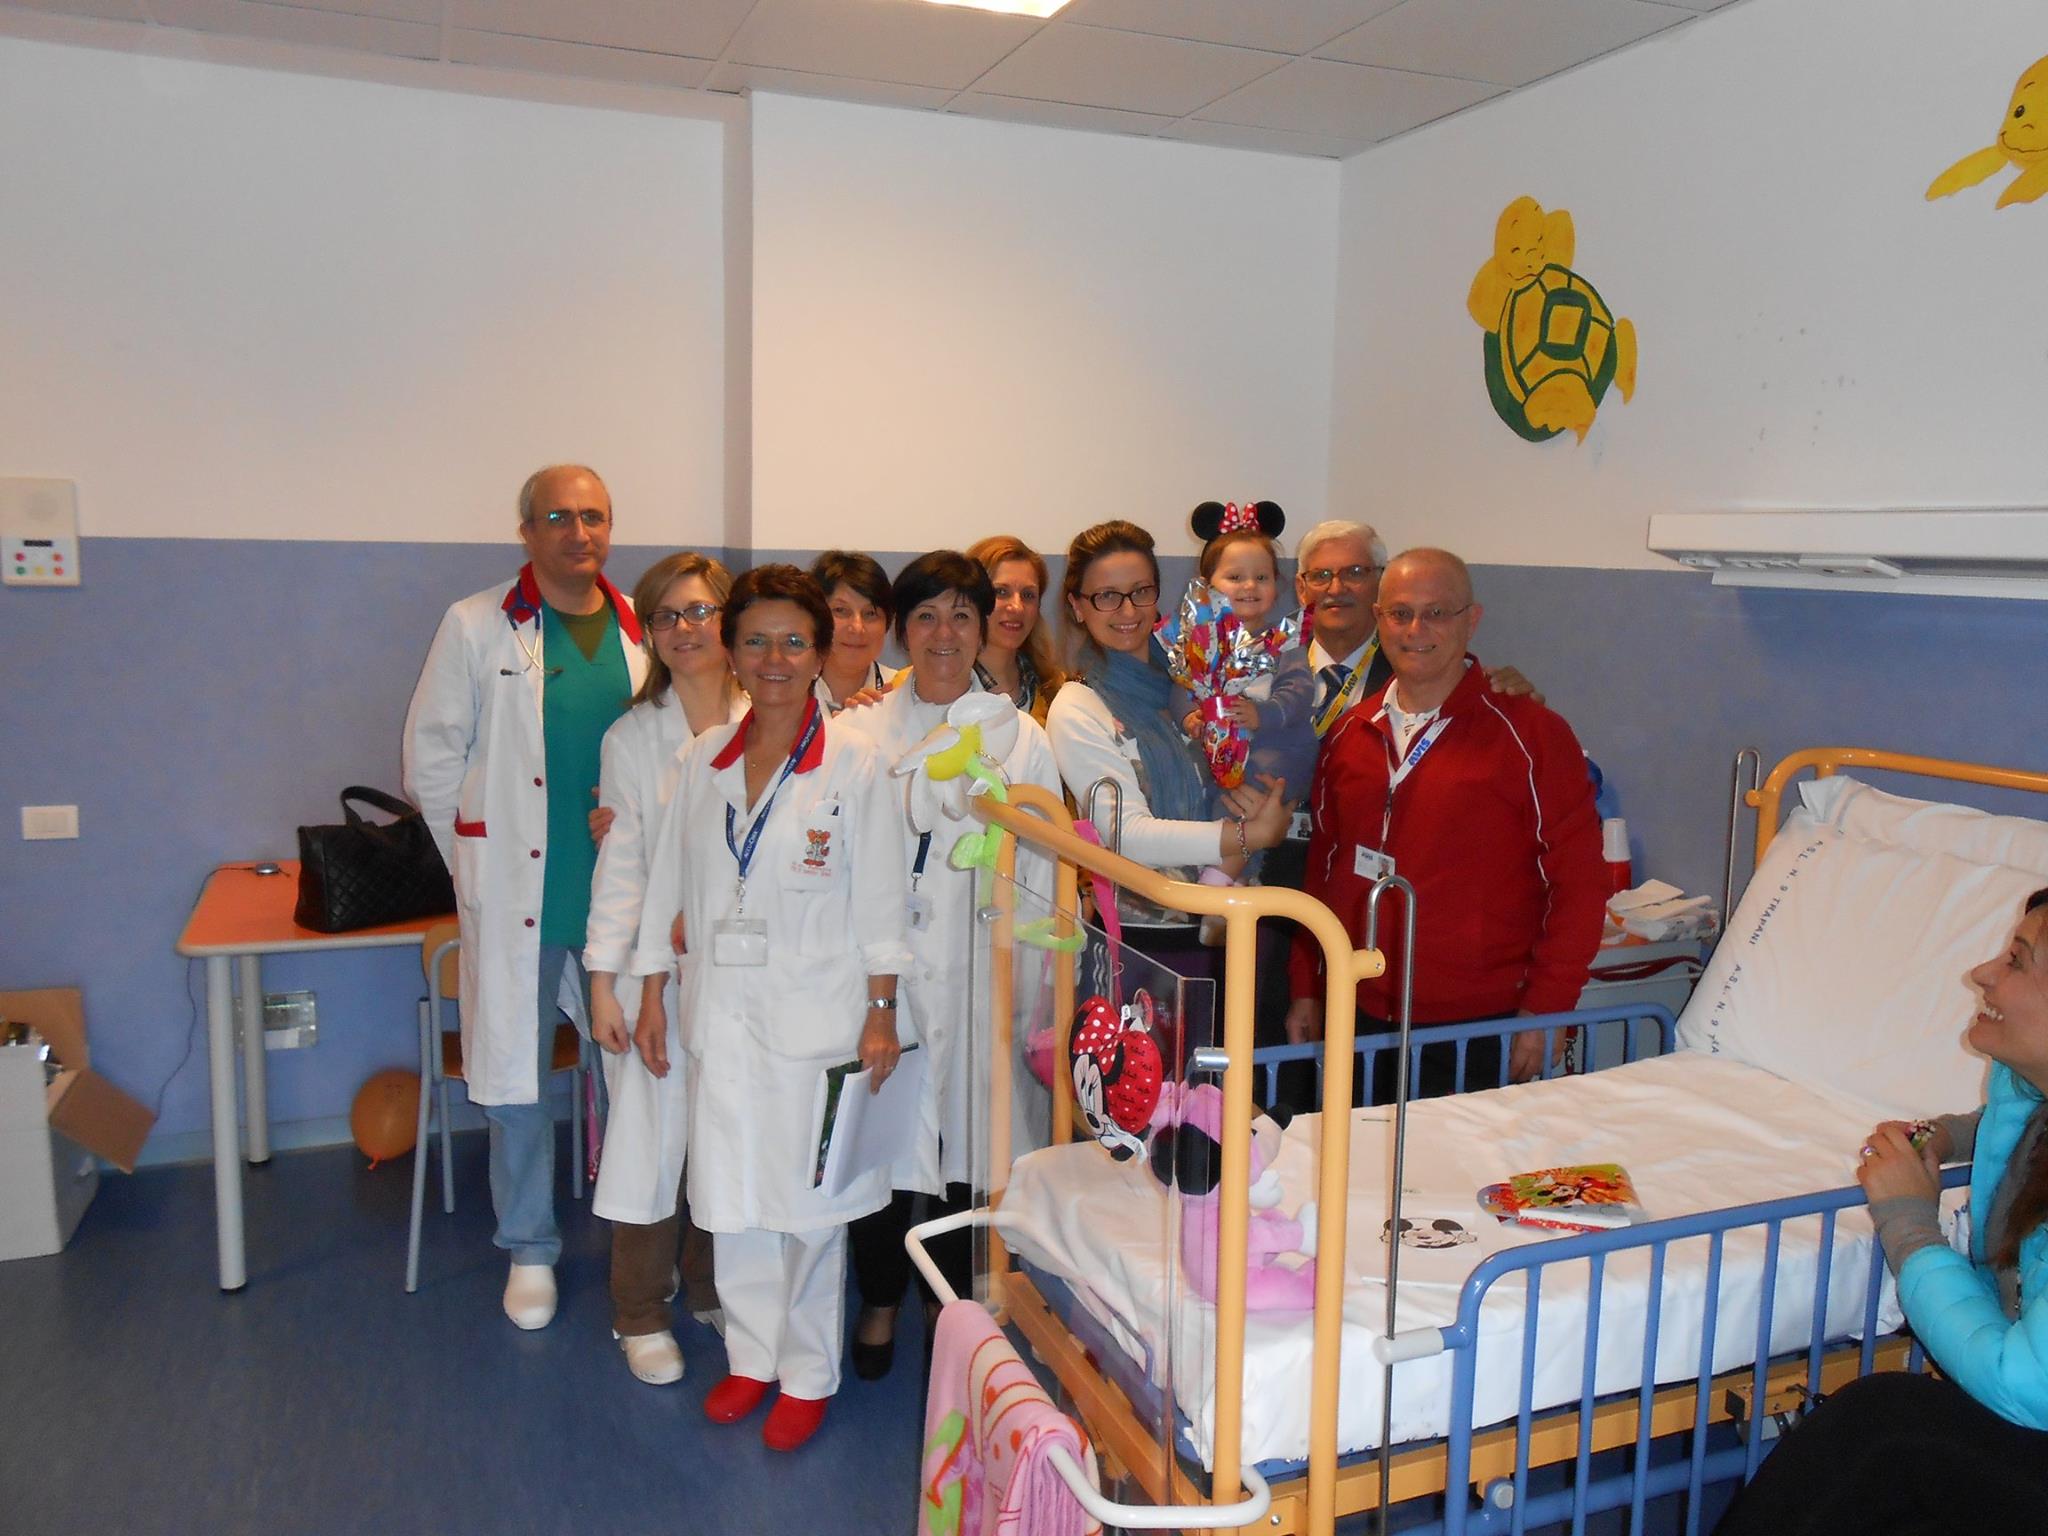 L’Avis visita il reparto Pediatria del “Paolo Borsellino” e dona uova di Pasqua ai piccoli pazienti